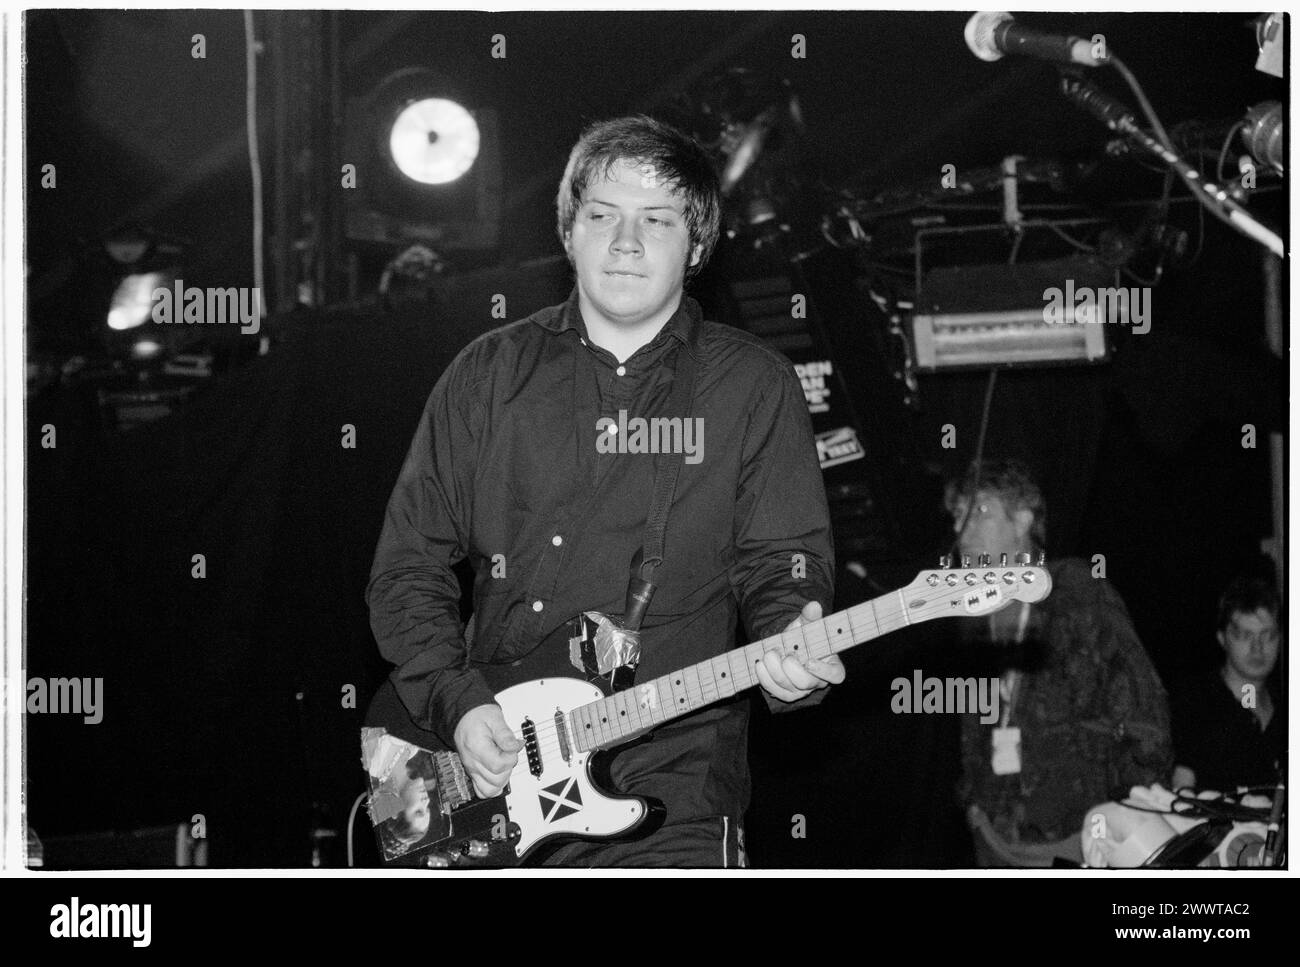 MOGWAI, ALL'INIZIO DELLA CARRIERA, CONCERTO del 1998: Un giovane Stuart Braithwaite di Mogwai che suonava al Reading Festival, Reading, Regno Unito, il 28 agosto 1998. Foto: Rob Watkins. INFO: I Mogwai, un gruppo post-rock scozzese formatosi nel 1995, incantano gli ascoltatori con i loro ampi paesaggi sonori e gli strumenti emozionali. Noti per le loro composizioni dinamiche e le potenti esibizioni dal vivo, la loro musica evoca una serie di emozioni, dall'introspezione all'euforia. Foto Stock